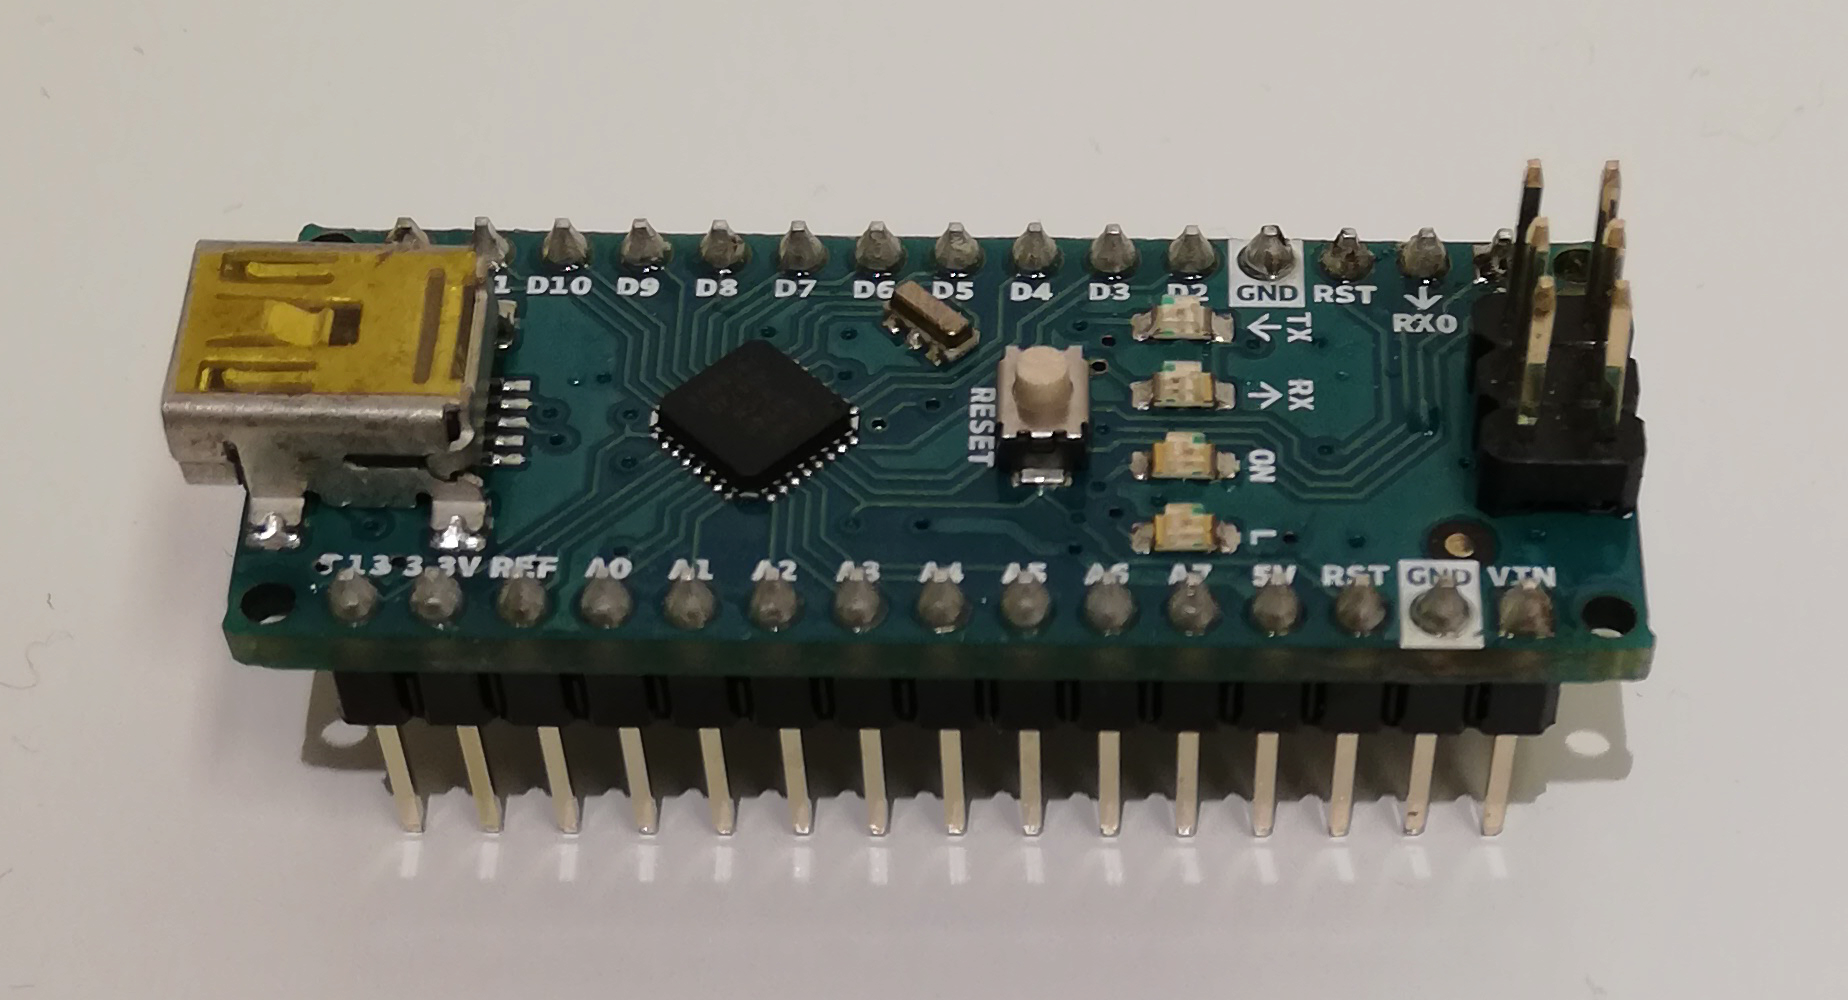 Example of microcontroller (Arduino Nano)